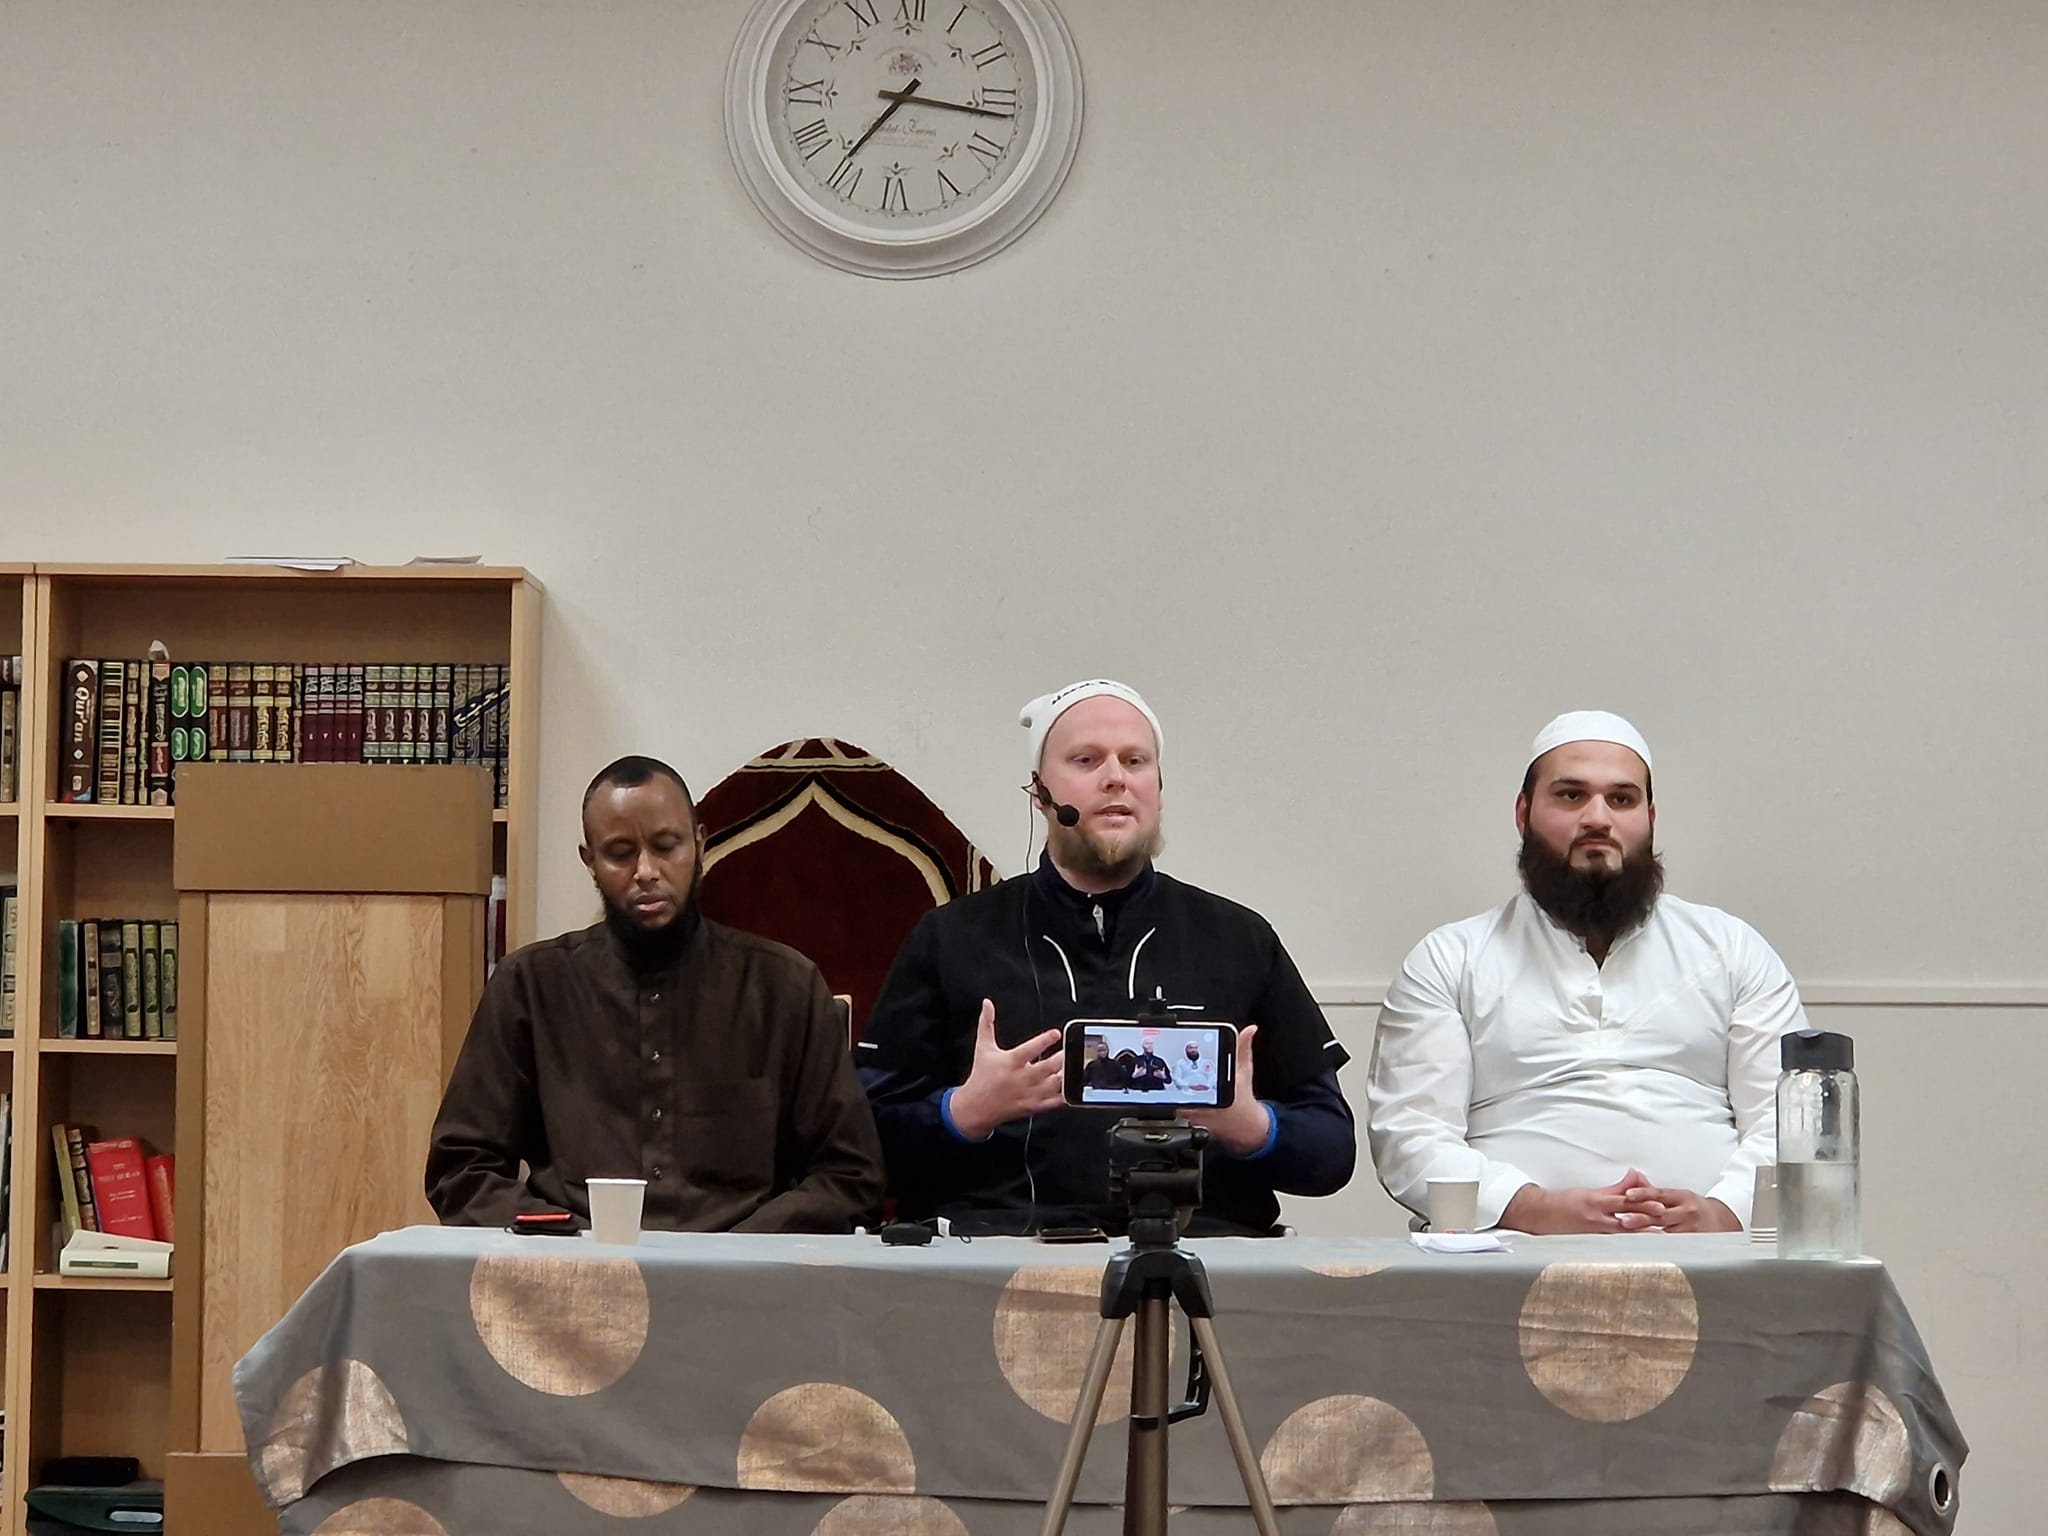 FOREDRAG: Frontfigur Yousuf Dawah holder foredrag i en moské.